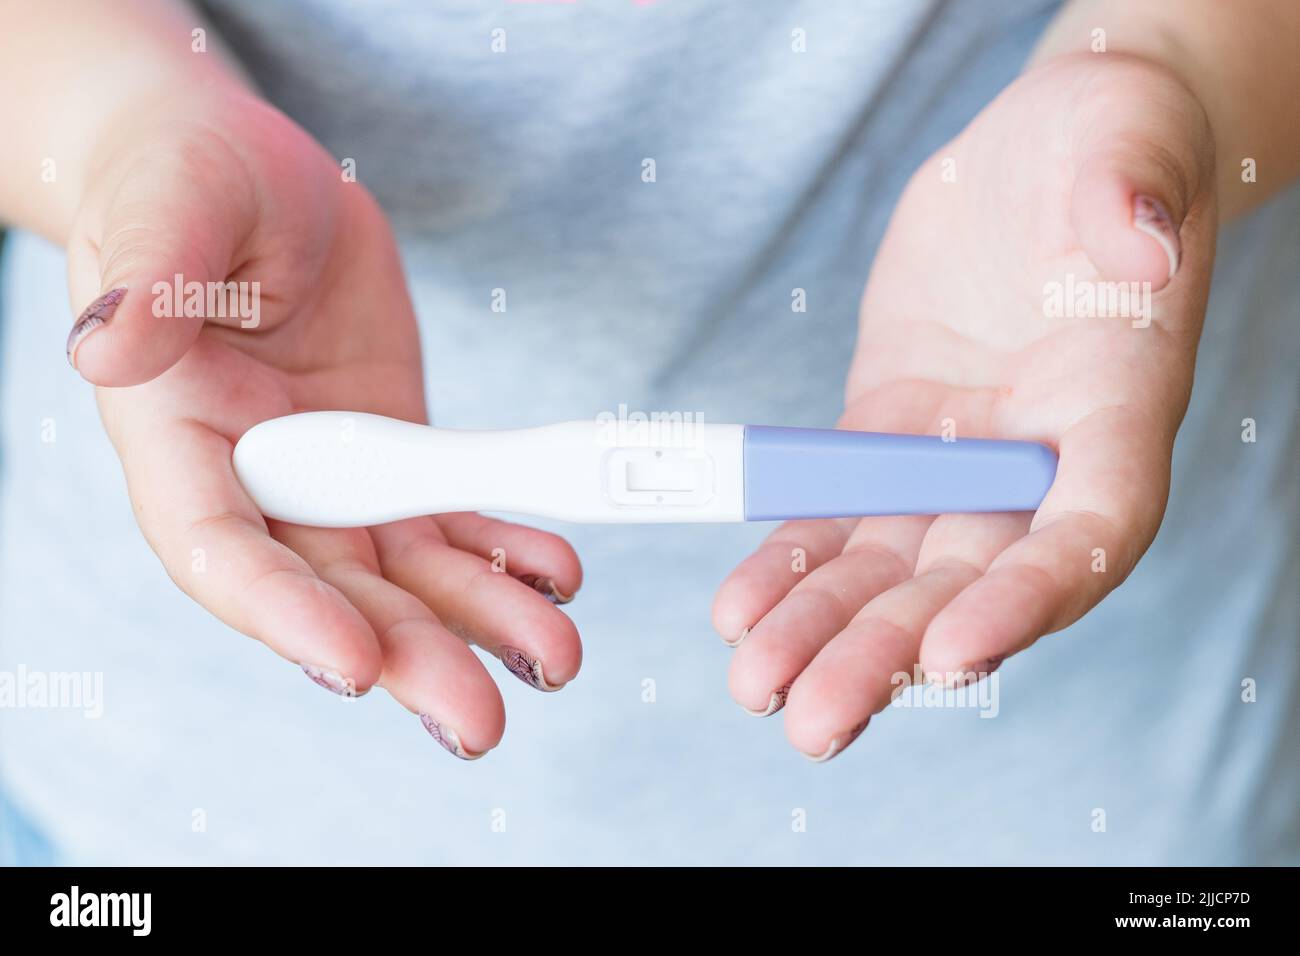 test de grossesse femme main résultat concevoir enfant Banque D'Images